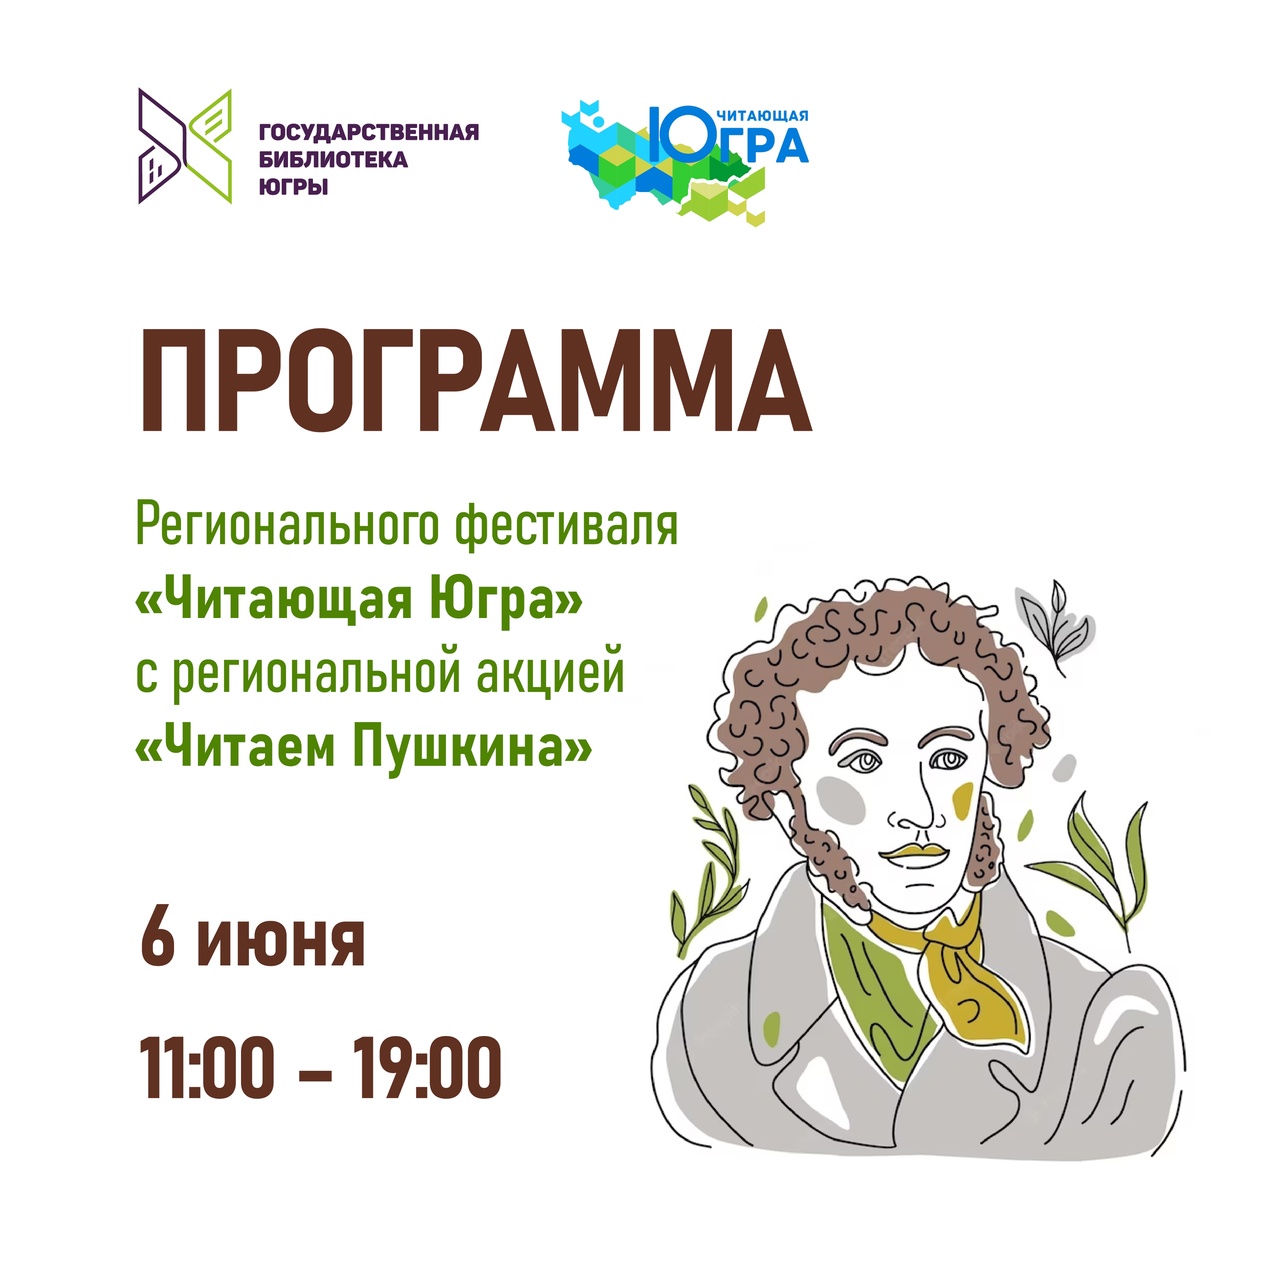 Фестиваль «Читающая Югра» с региональной акцией «Читаем Пушкина» пройдет 6 июня